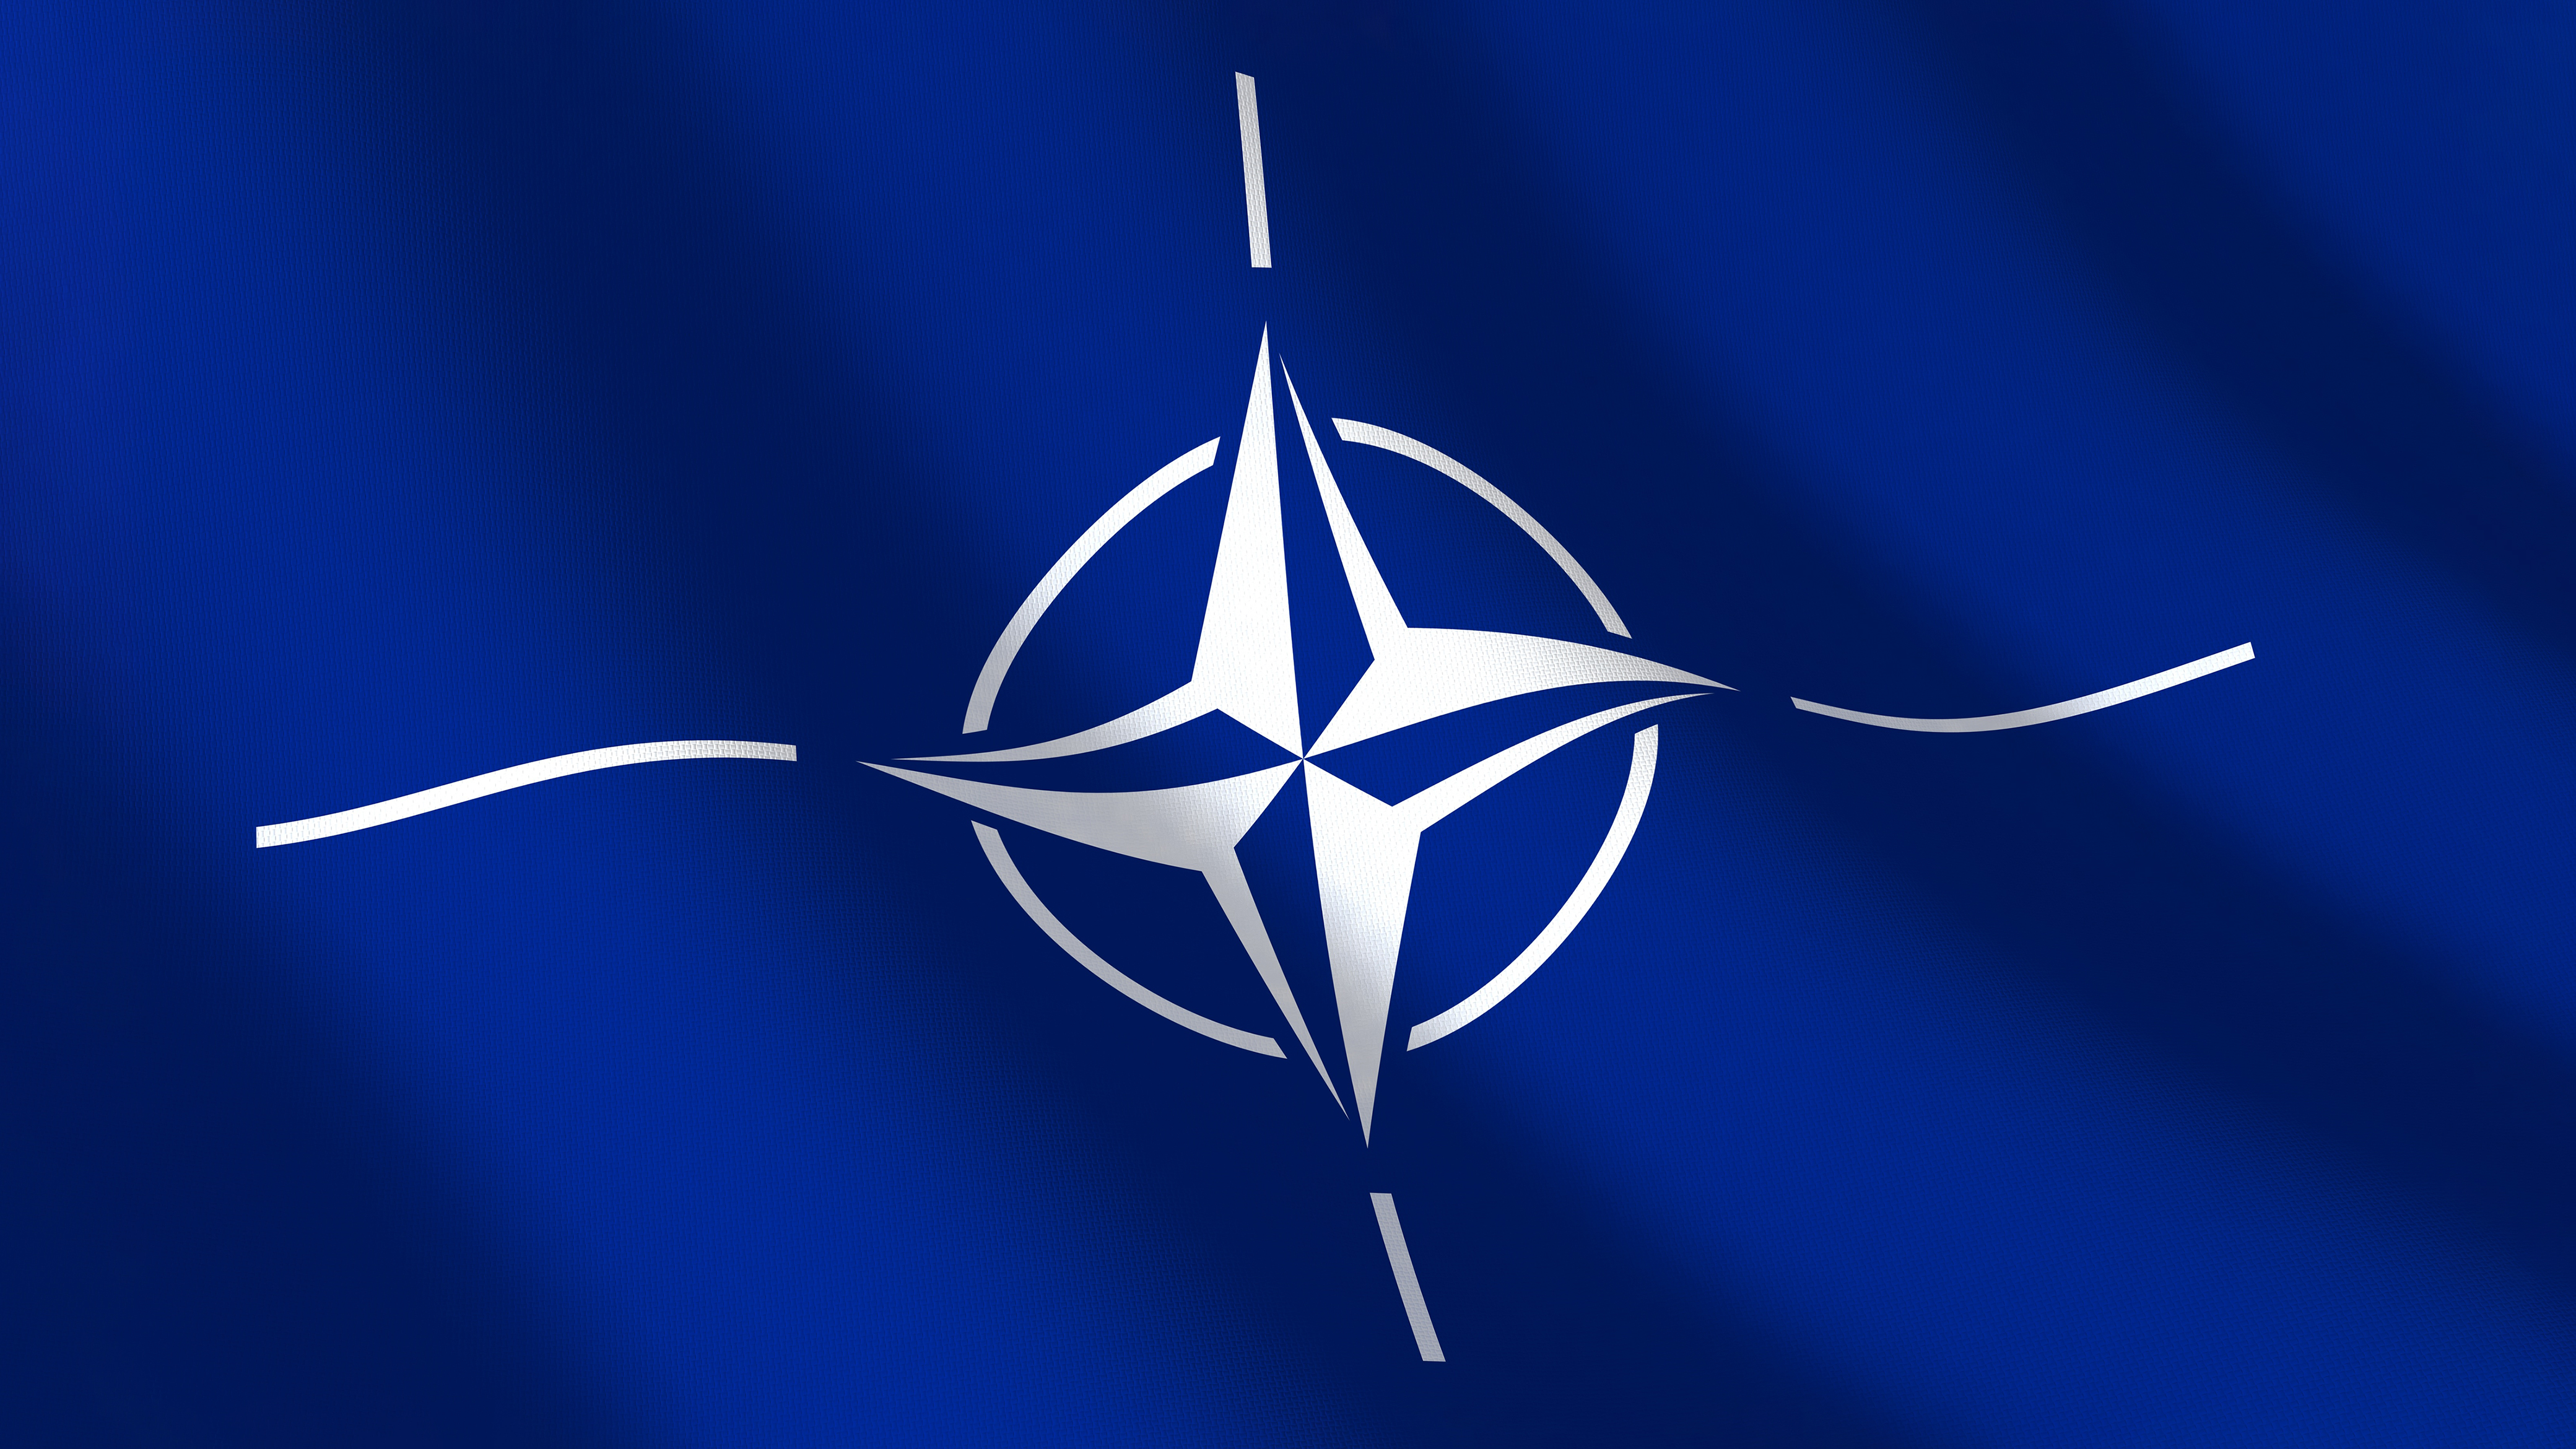 Mai mulţi bani pentru apărare: Britanicii cer ca ţinta NATO pentru cheltuieli să crească din cauza tensiunilor geopolitice